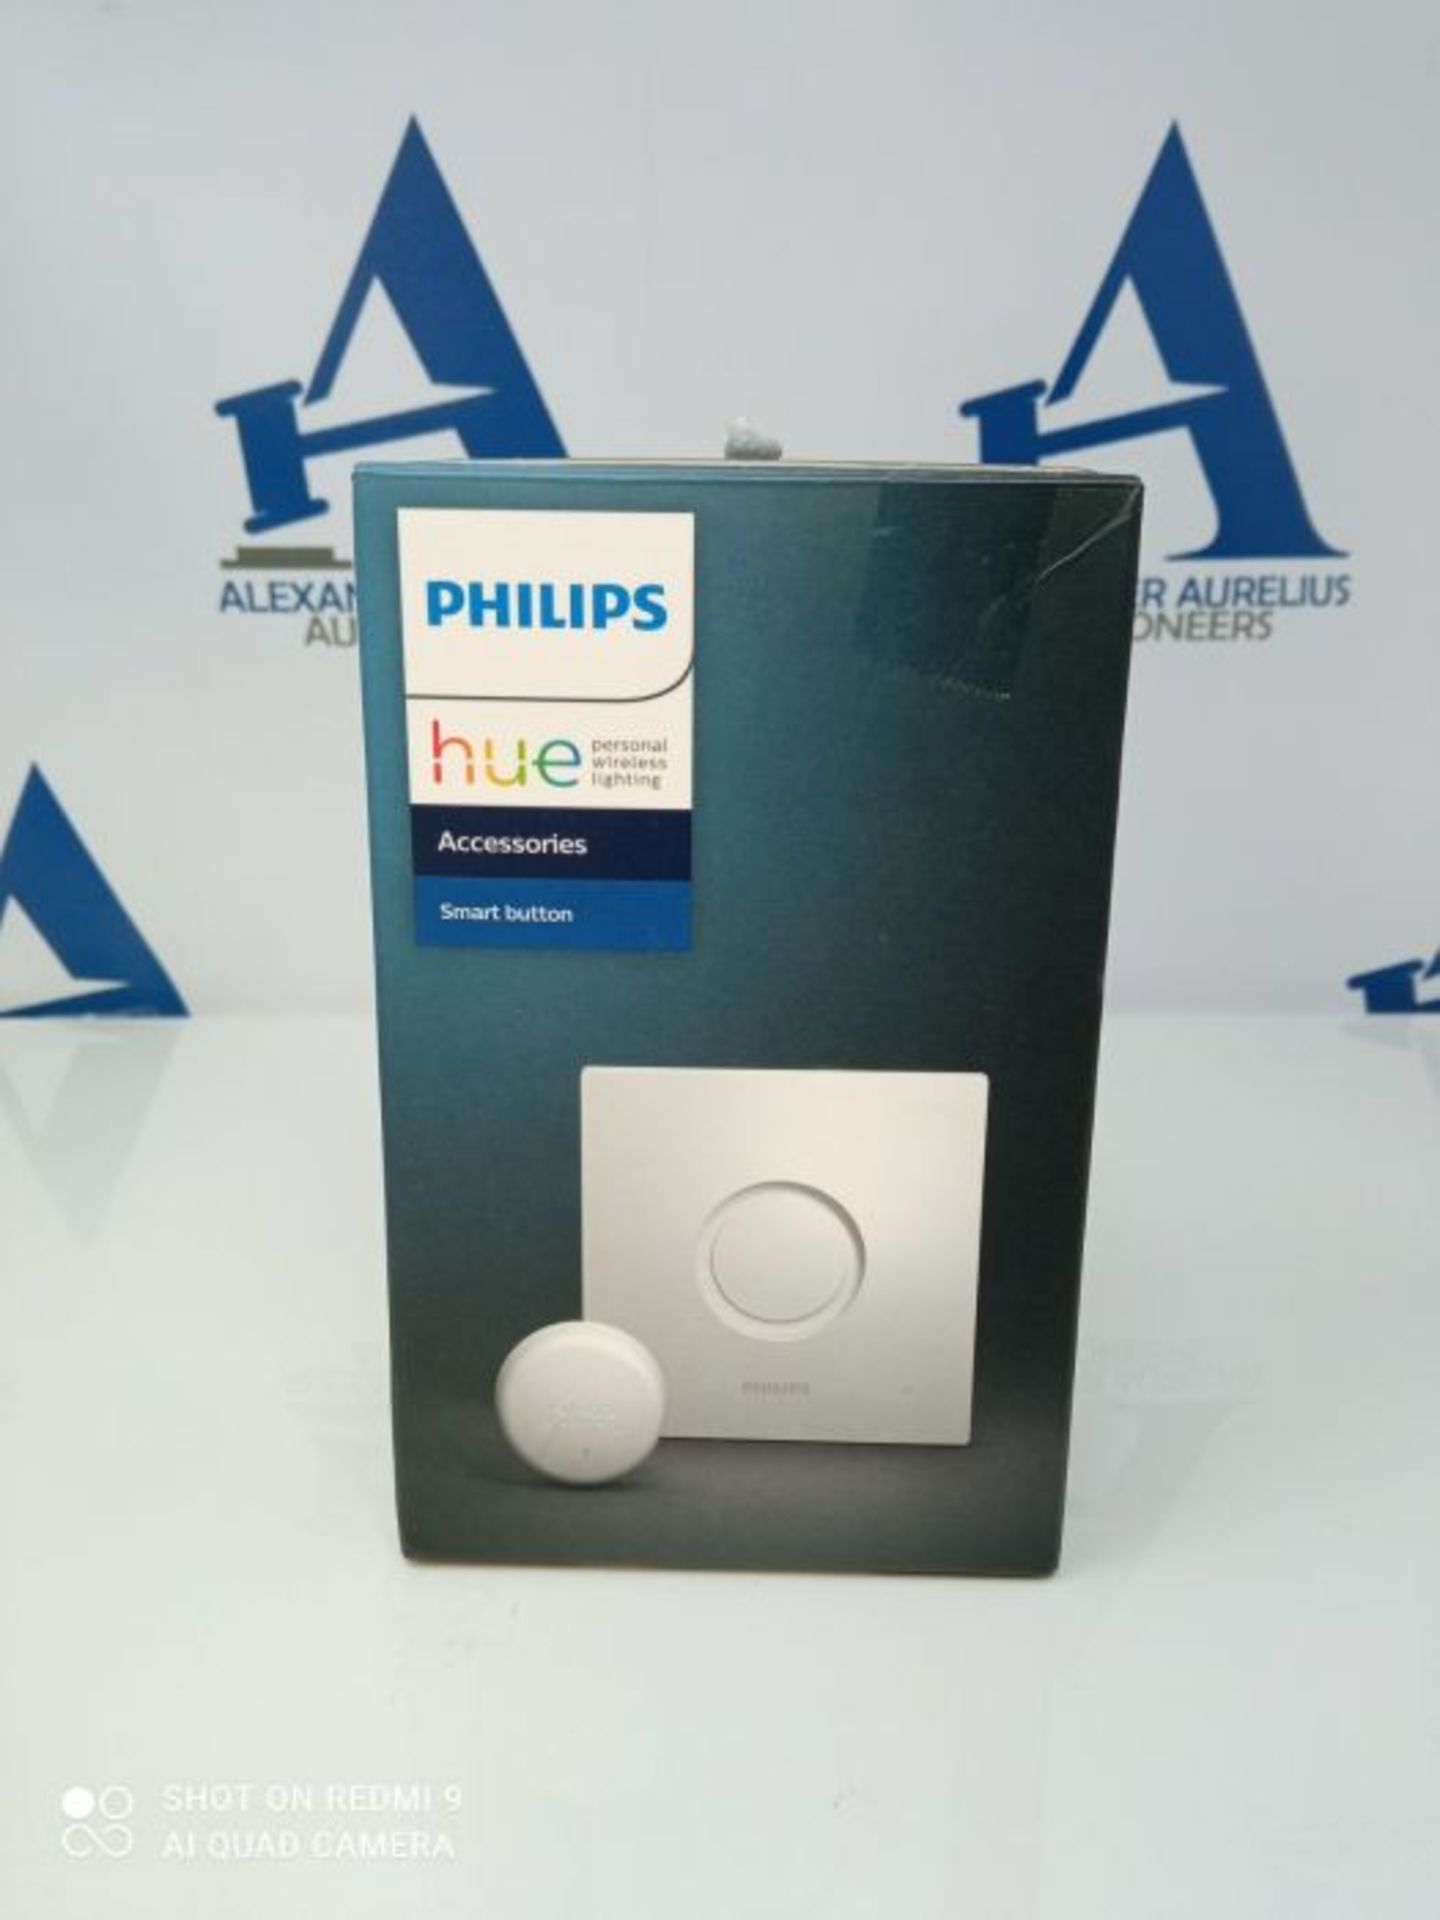 Philips Hue Smart Button bouton tÃ©lÃ©commande intelligent connectÃ©, variateur - Image 2 of 3